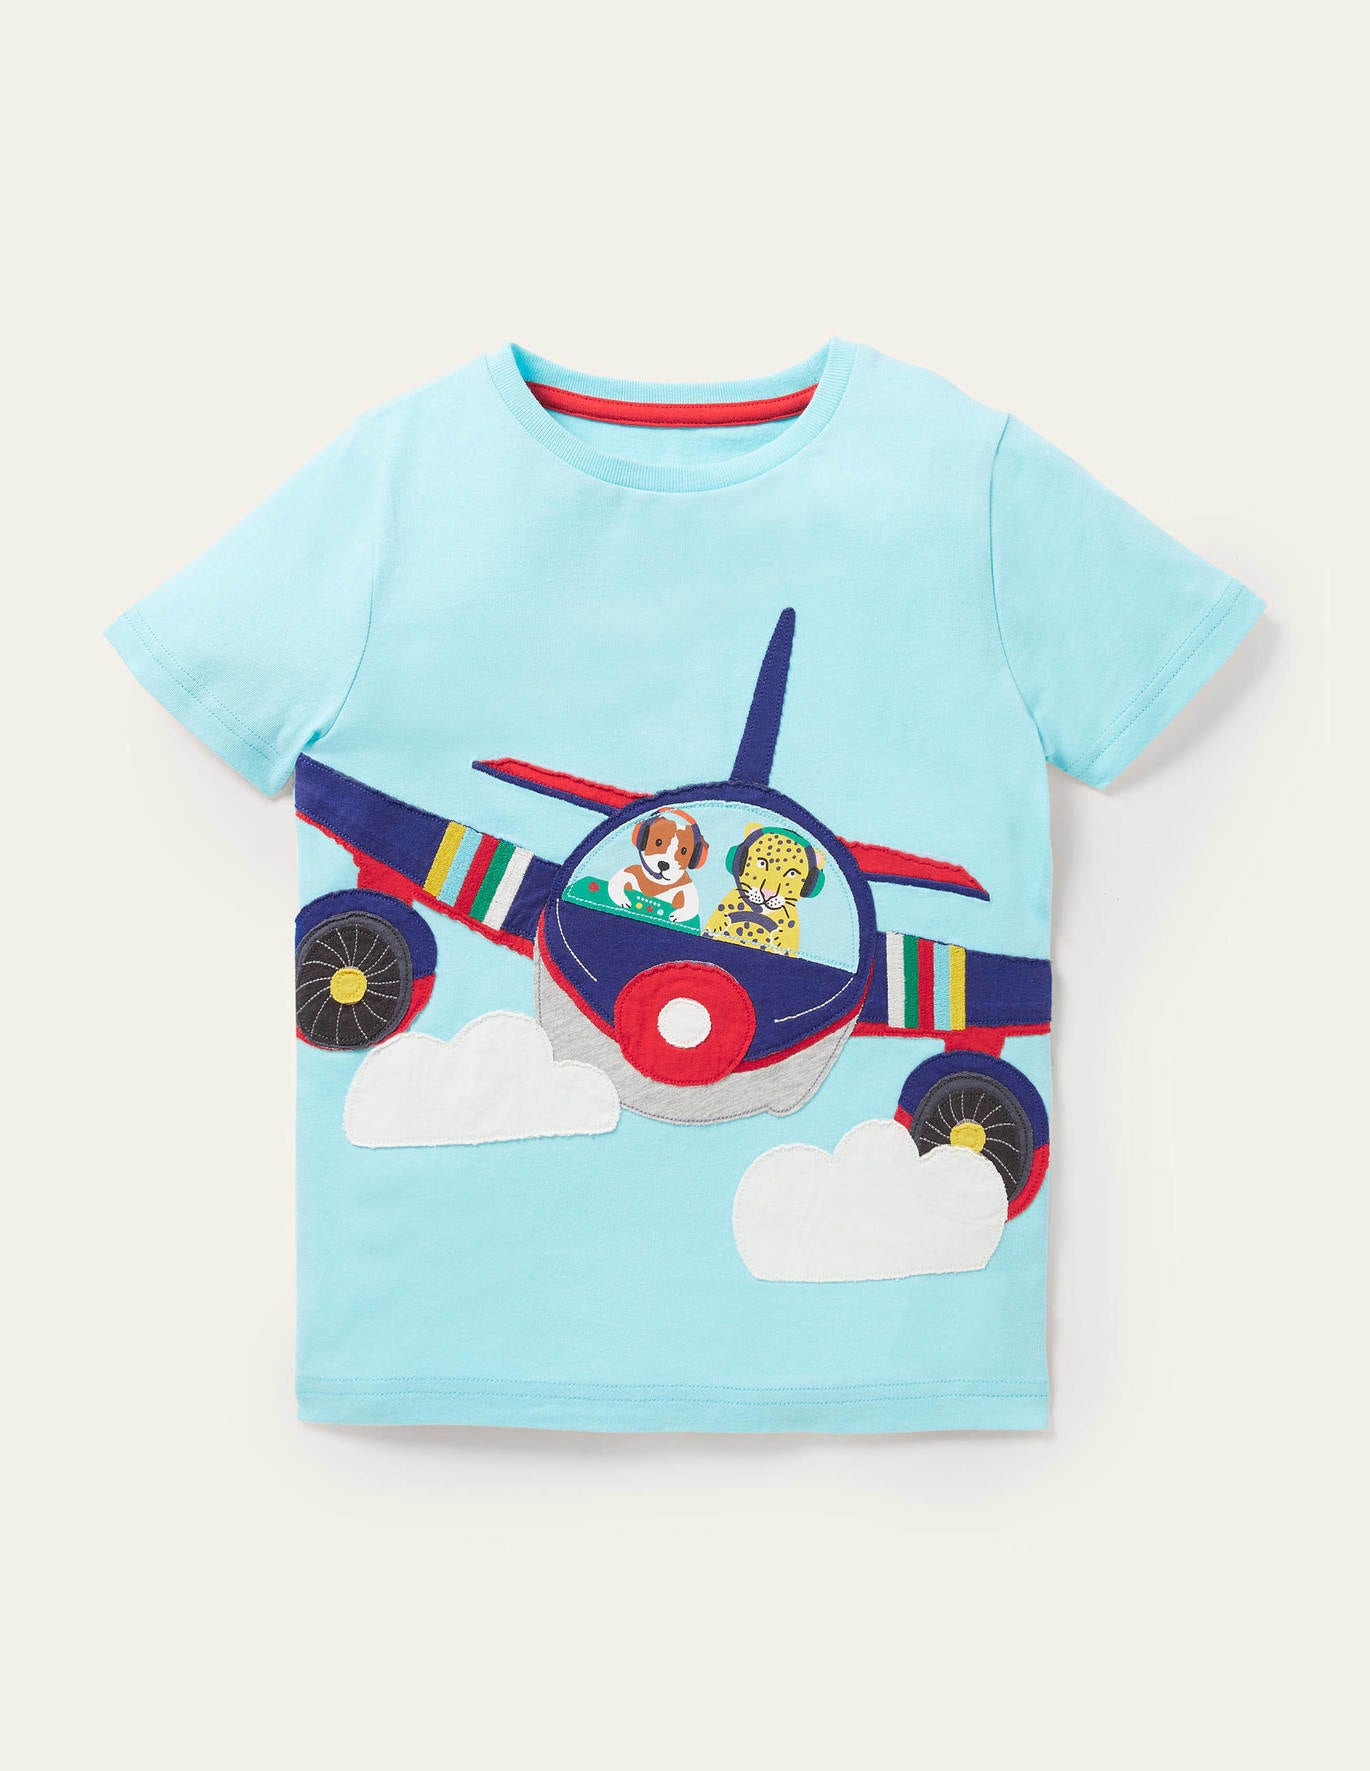 Boden Front & Back Applique T-shirt - Georgian Blue Plane